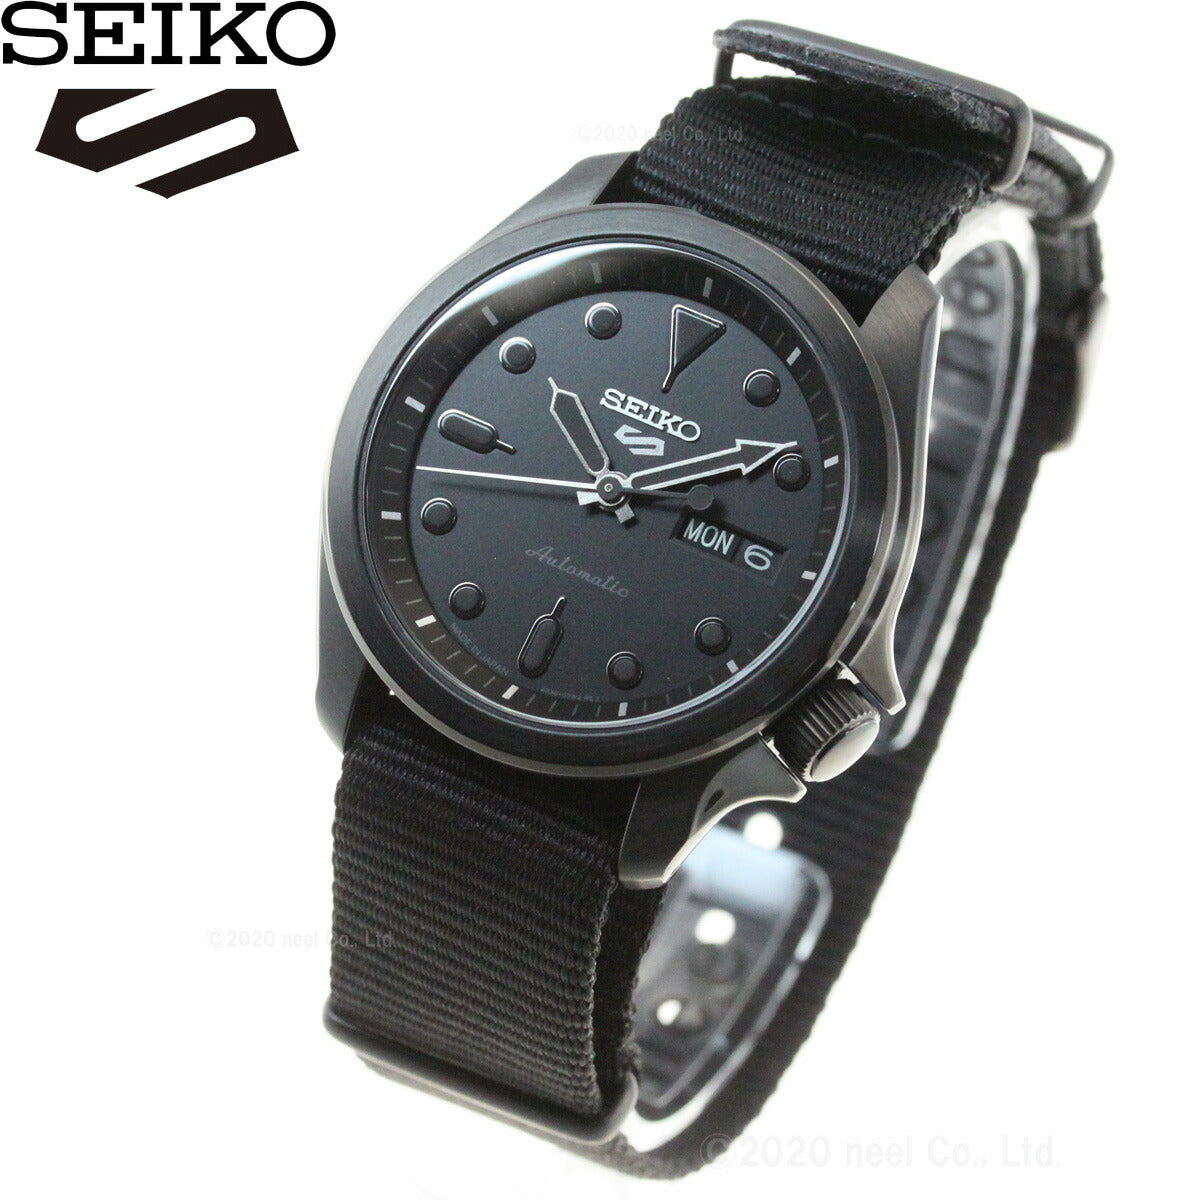 セイコー5 スポーツ SEIKO 5 SPORTS 自動巻き メカニカル 流通限定モデル 腕時計 メンズ セイコーファイブ スポーツ Sports SBSA059